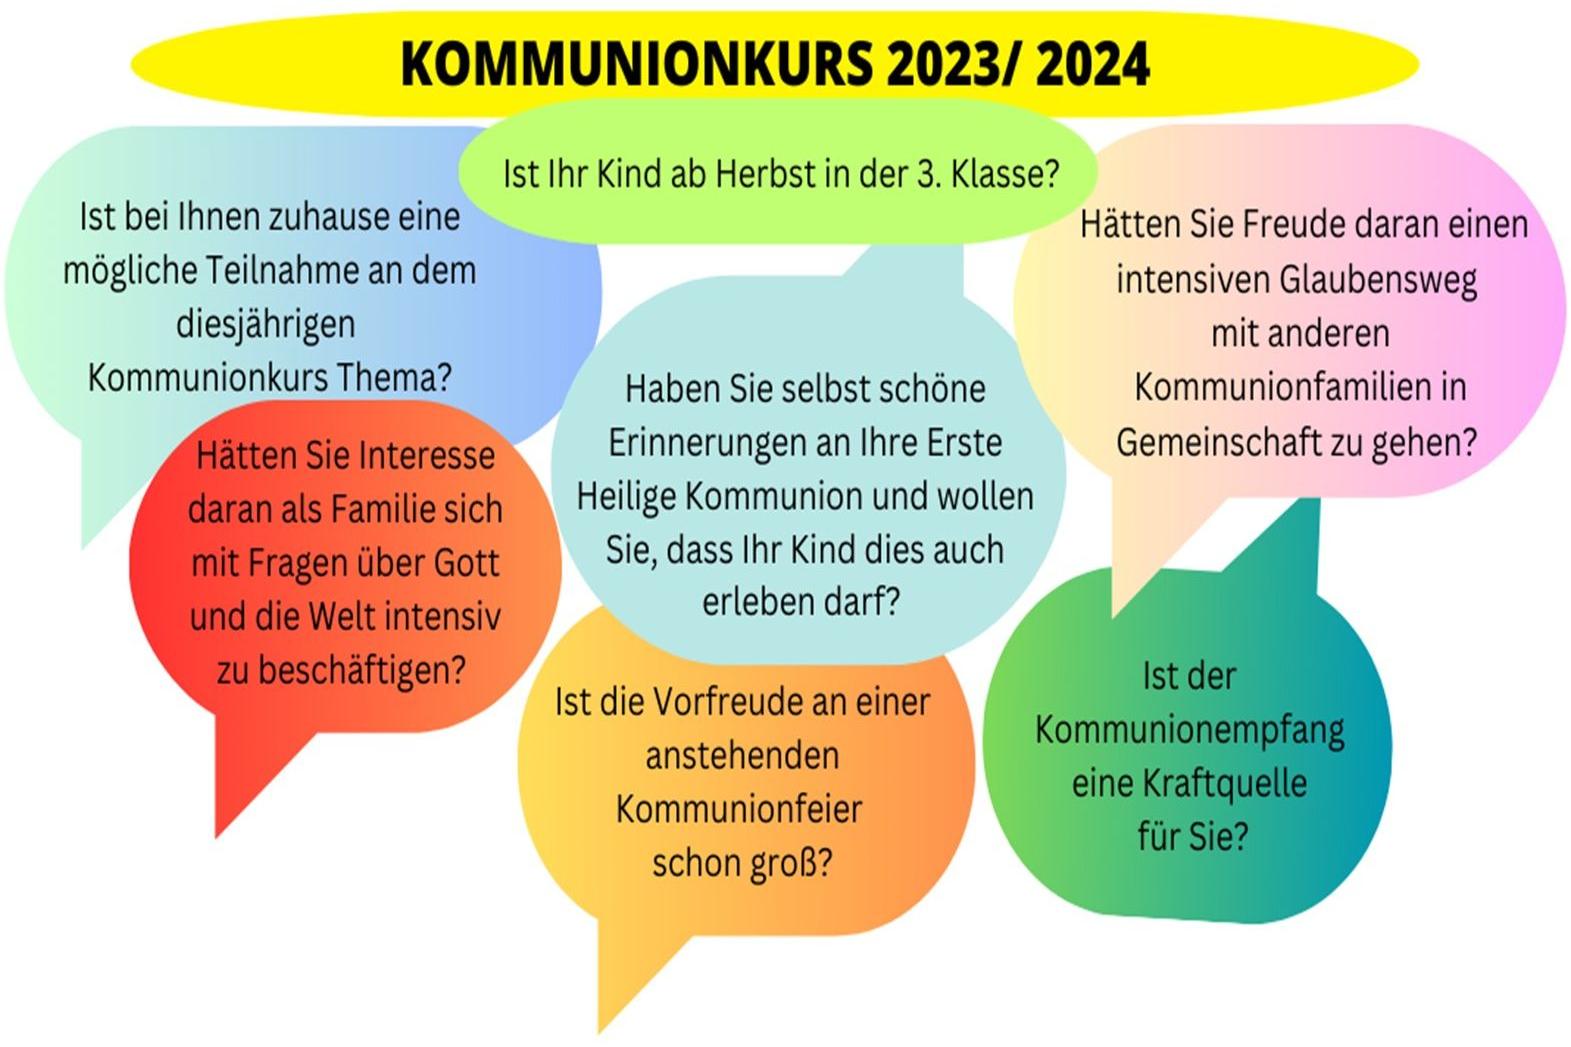 Erstkommunion 2023-2024